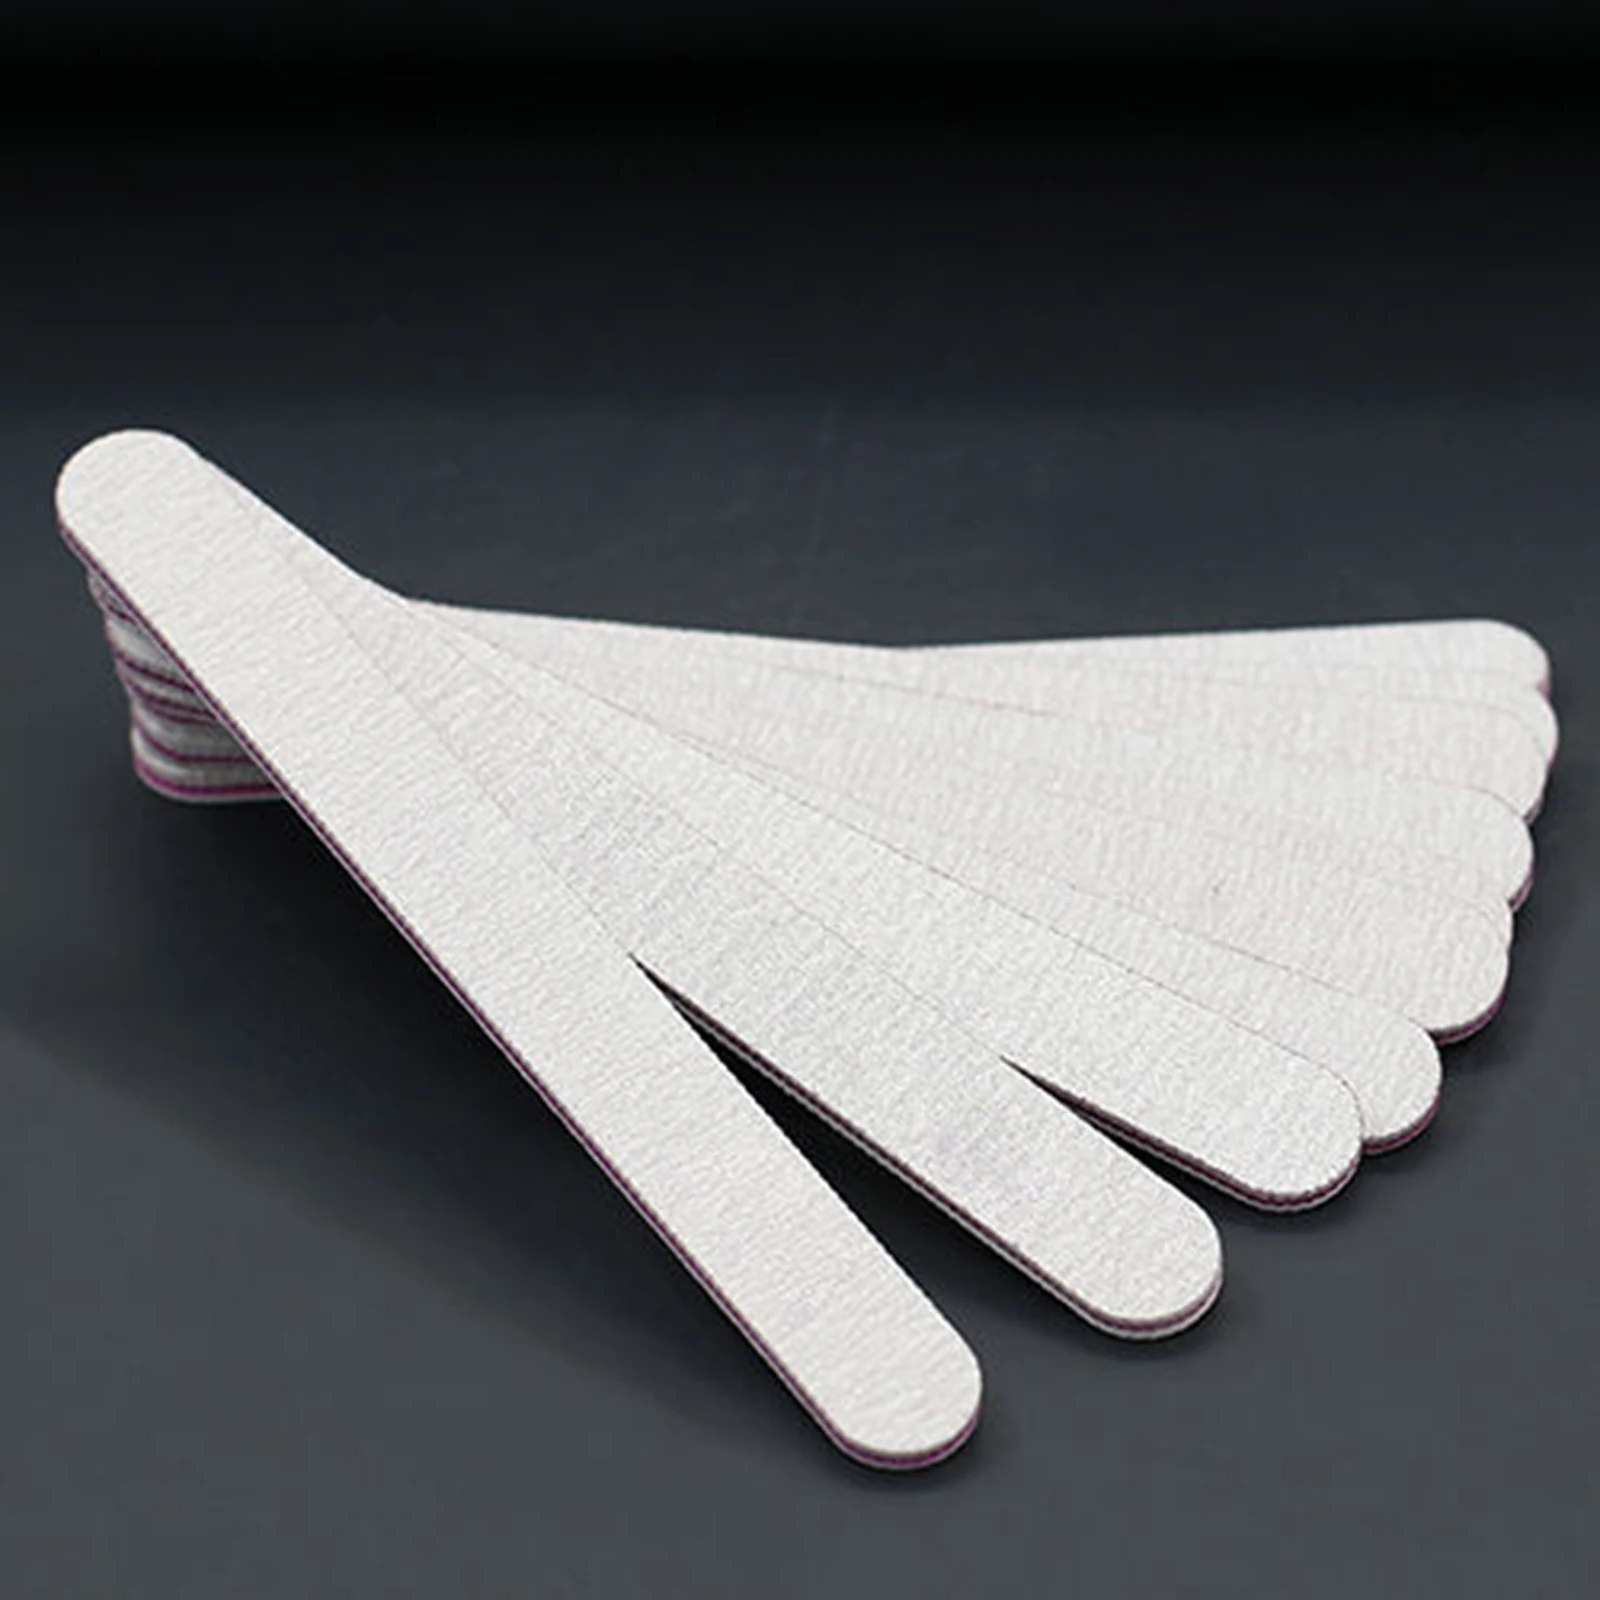 2 типа профессиональная красочная пилочка для ногтей Полировка буфера шлифовальный брусок дизайн ногтей маникюрный спонж отскок инструменты для маникюра